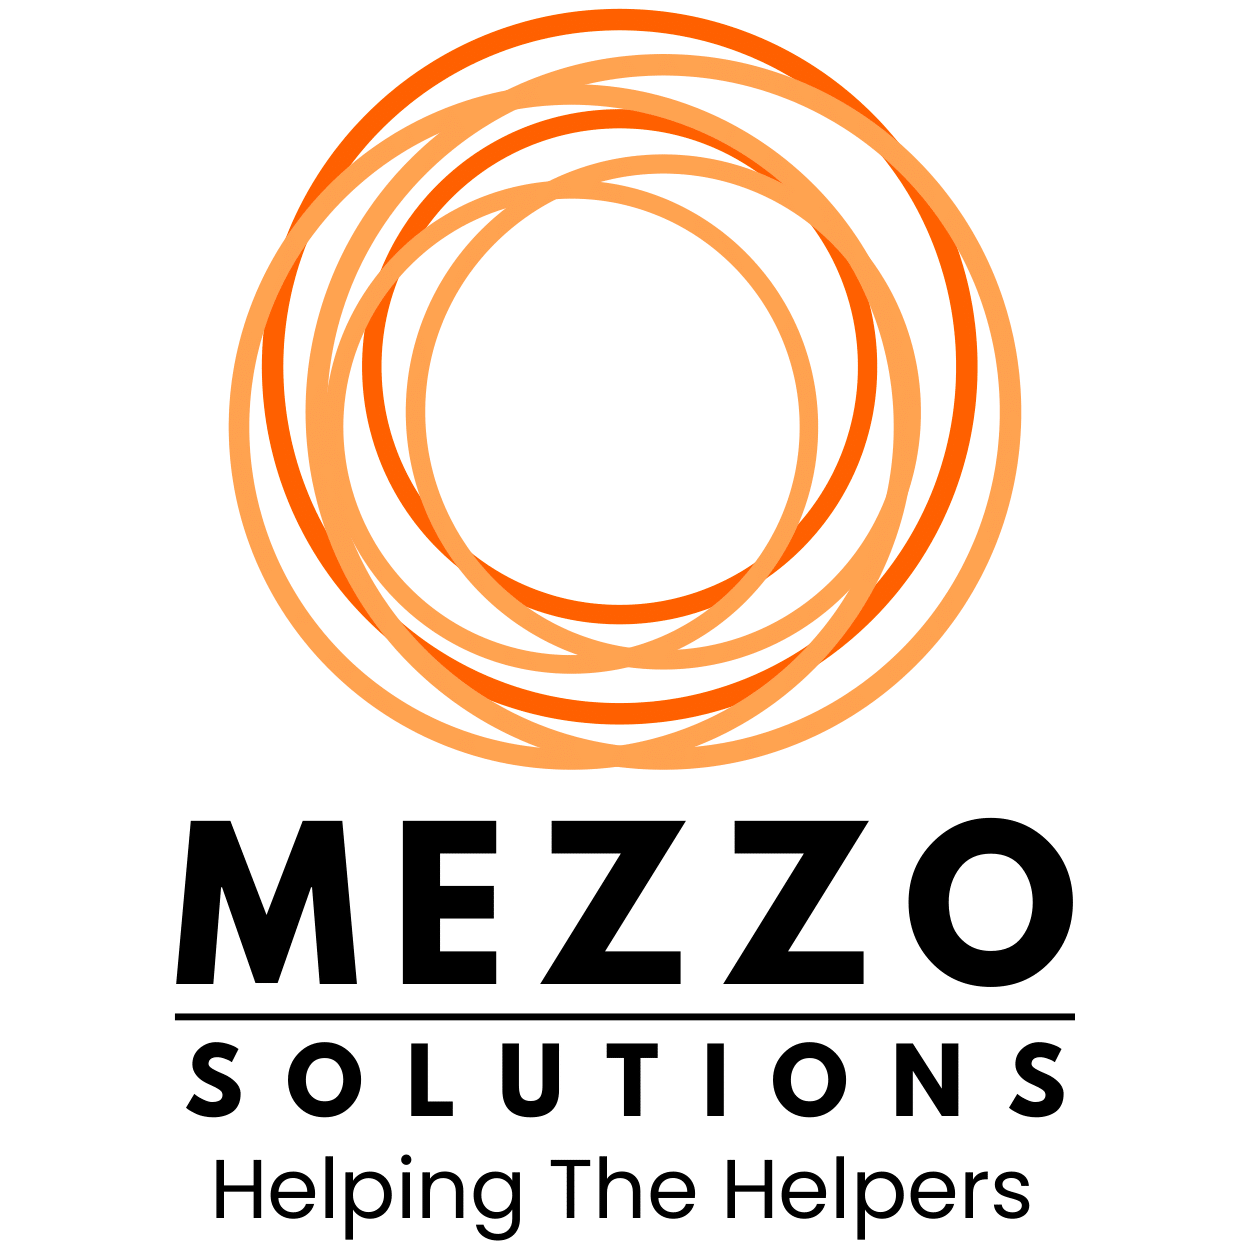 Mezzo Solutions